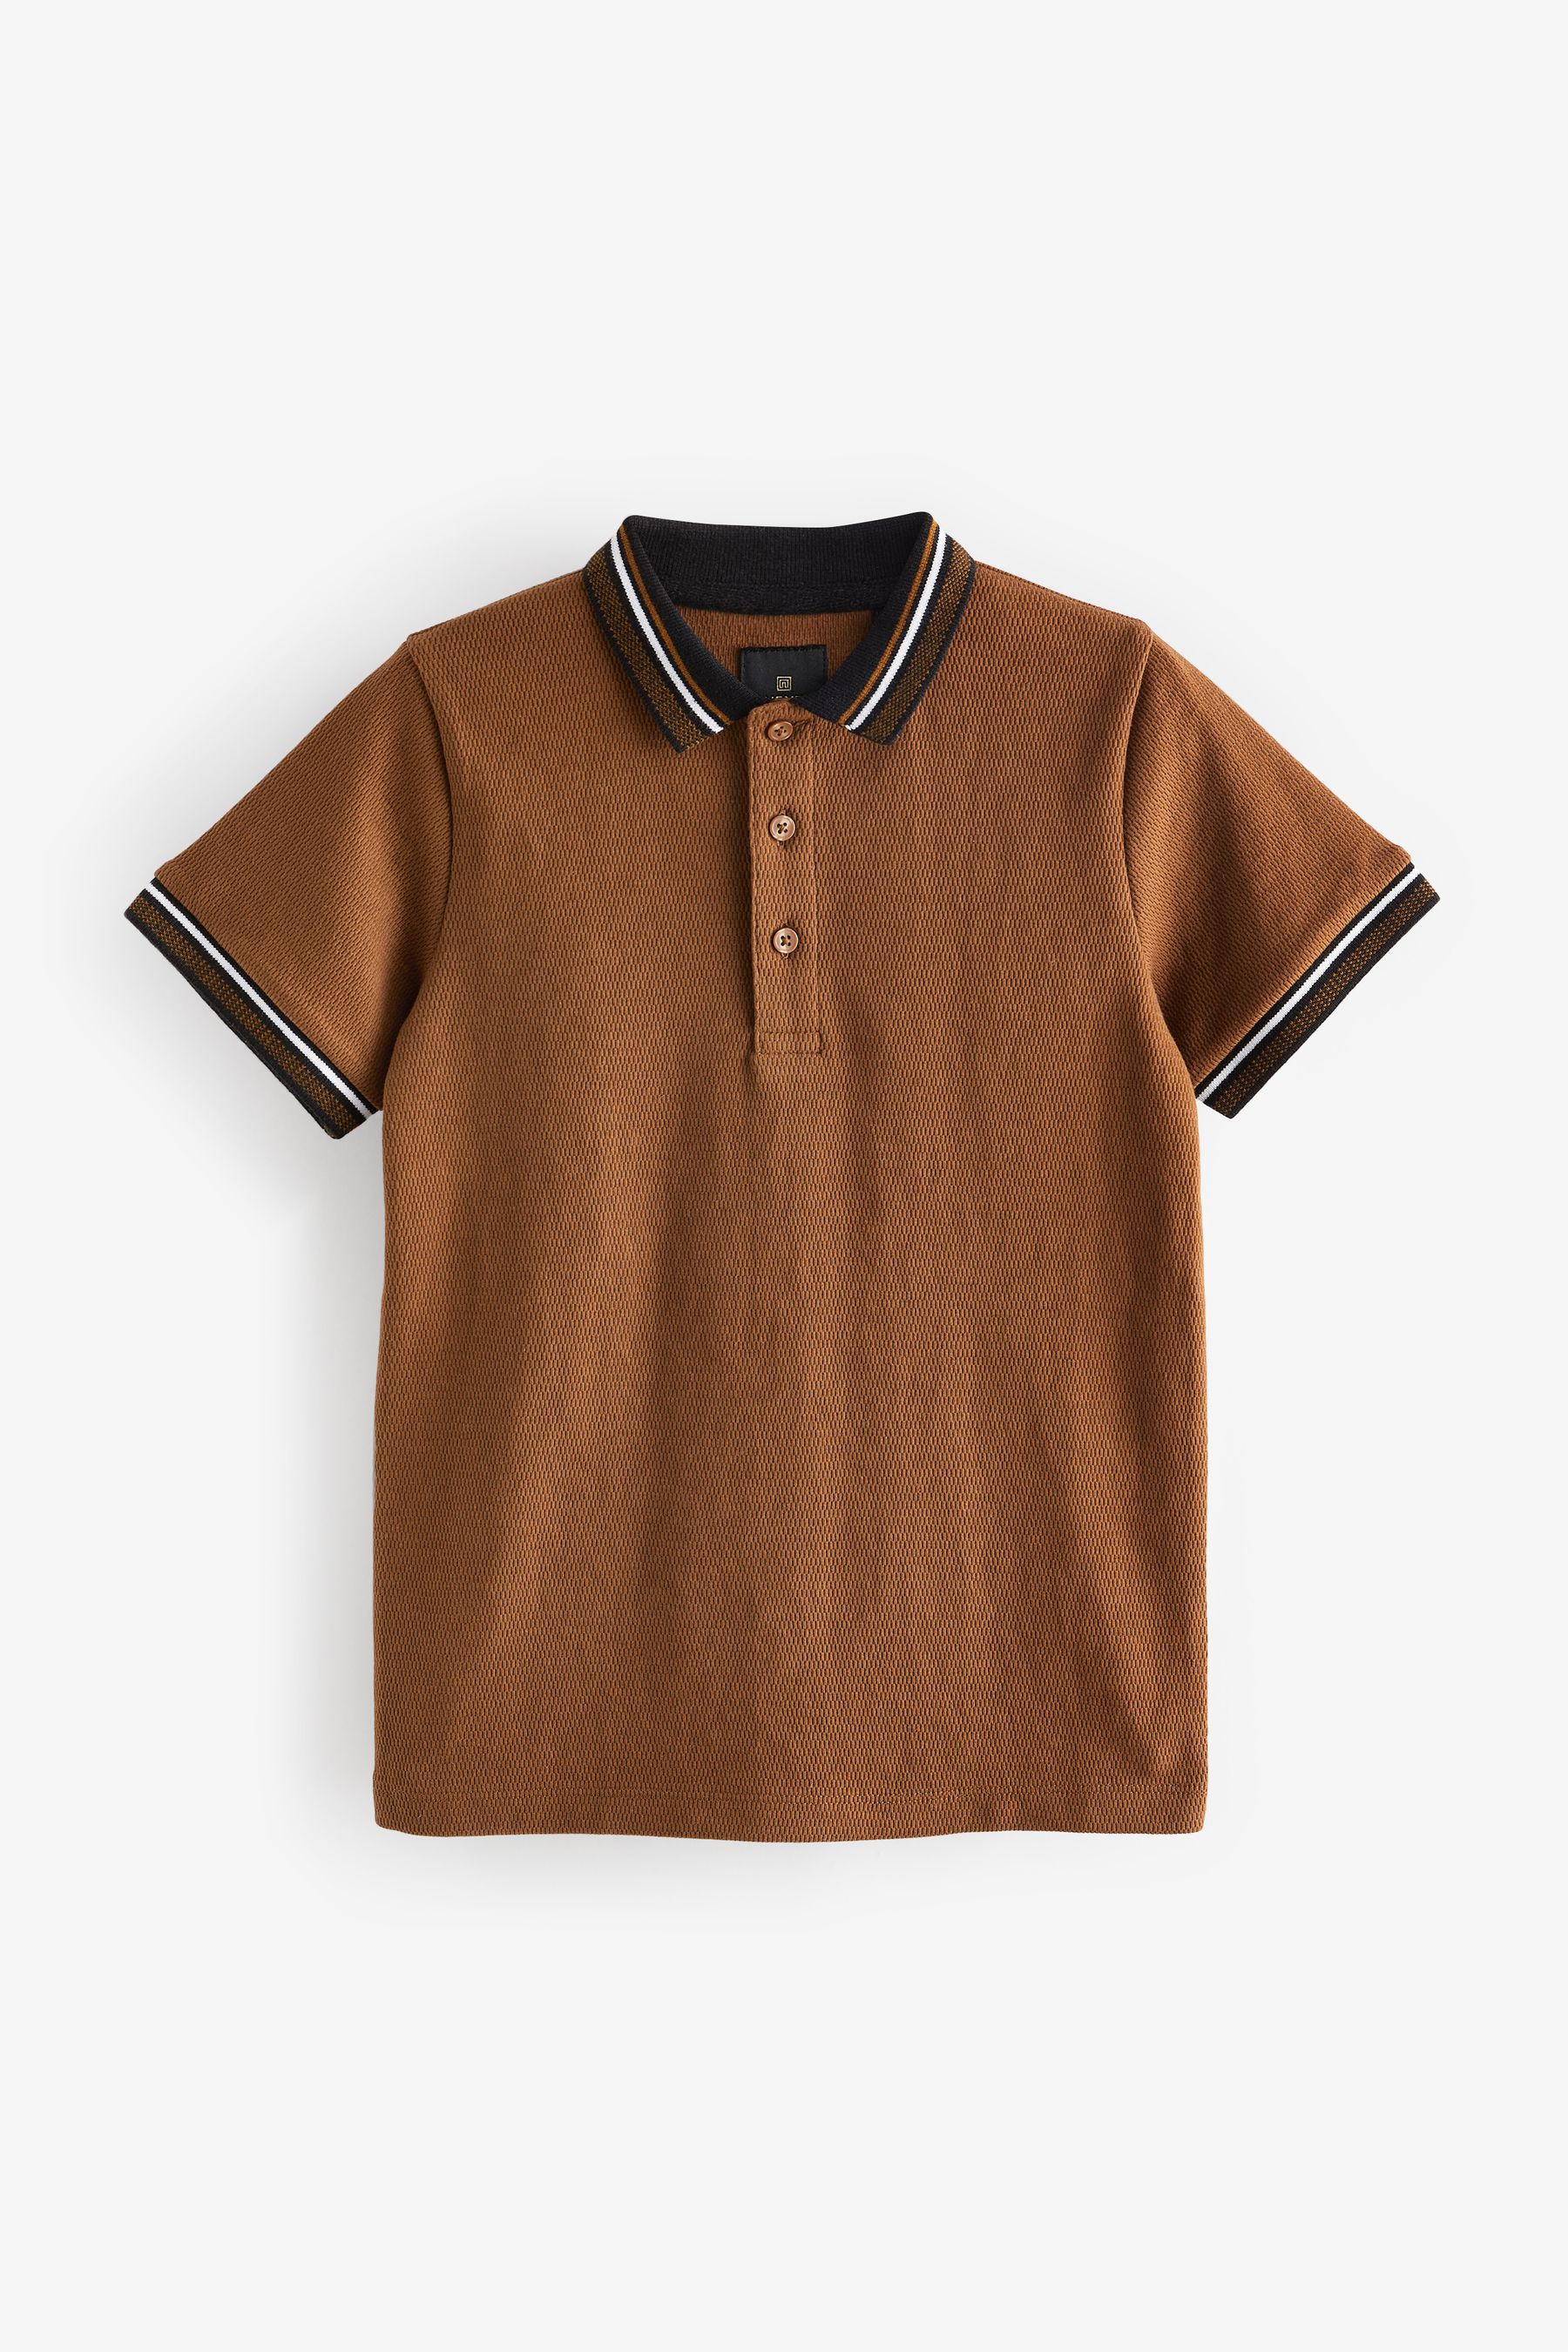 Жаккардовая рубашка-поло с короткими рукавами Next, коричневый